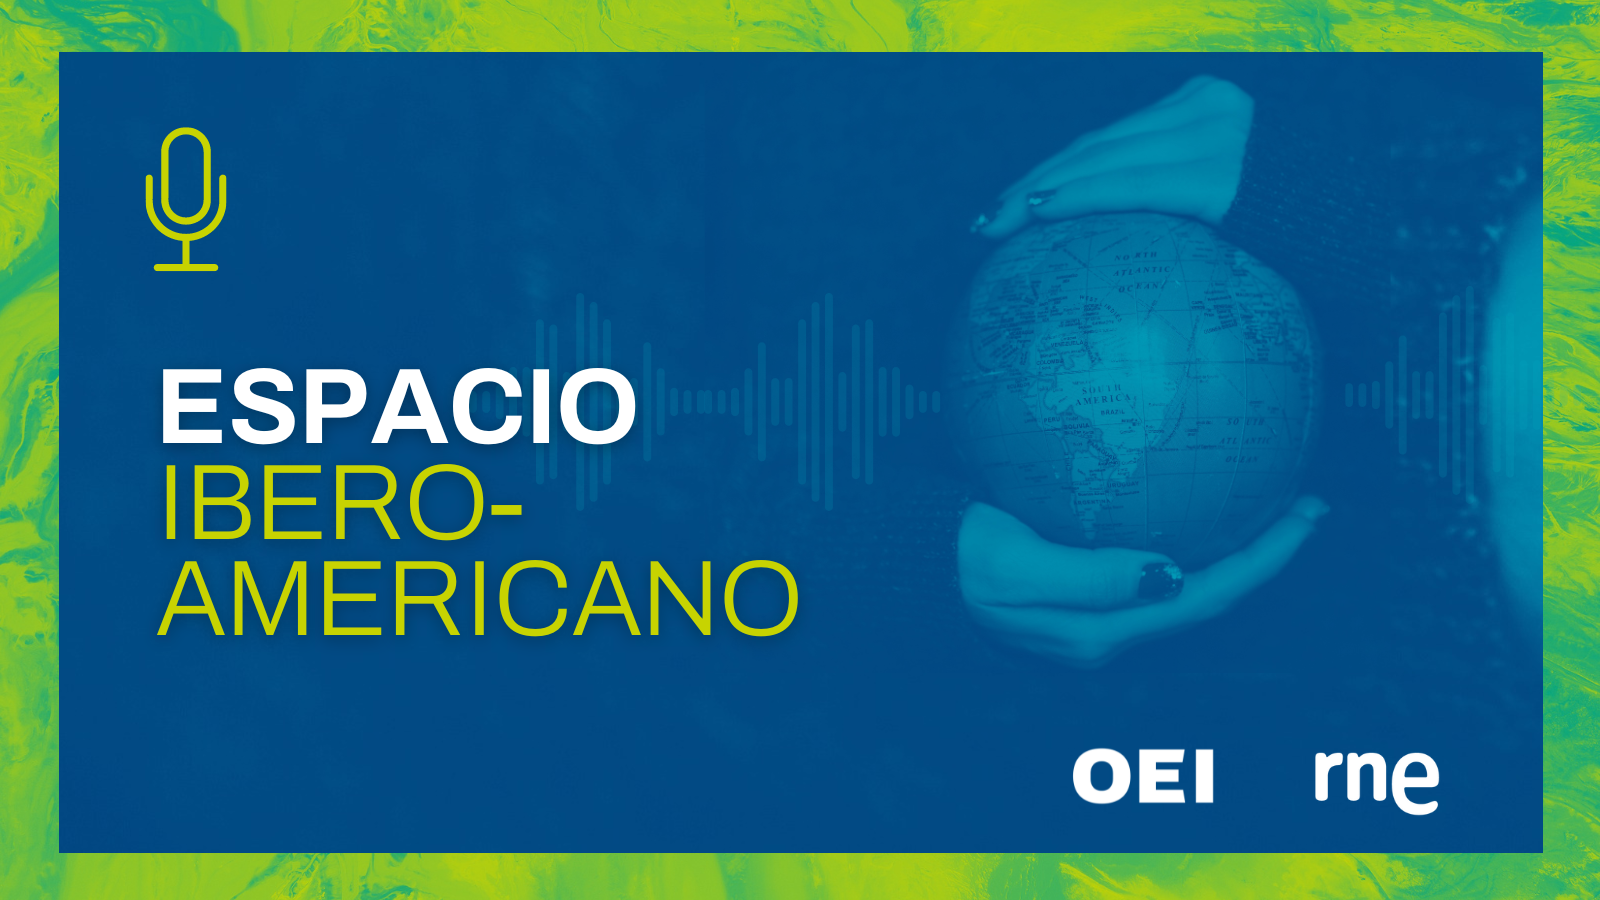 ‘Espaço Ibero-americano’ celebra 500 episódios retratando o melhor da Ibero-américa